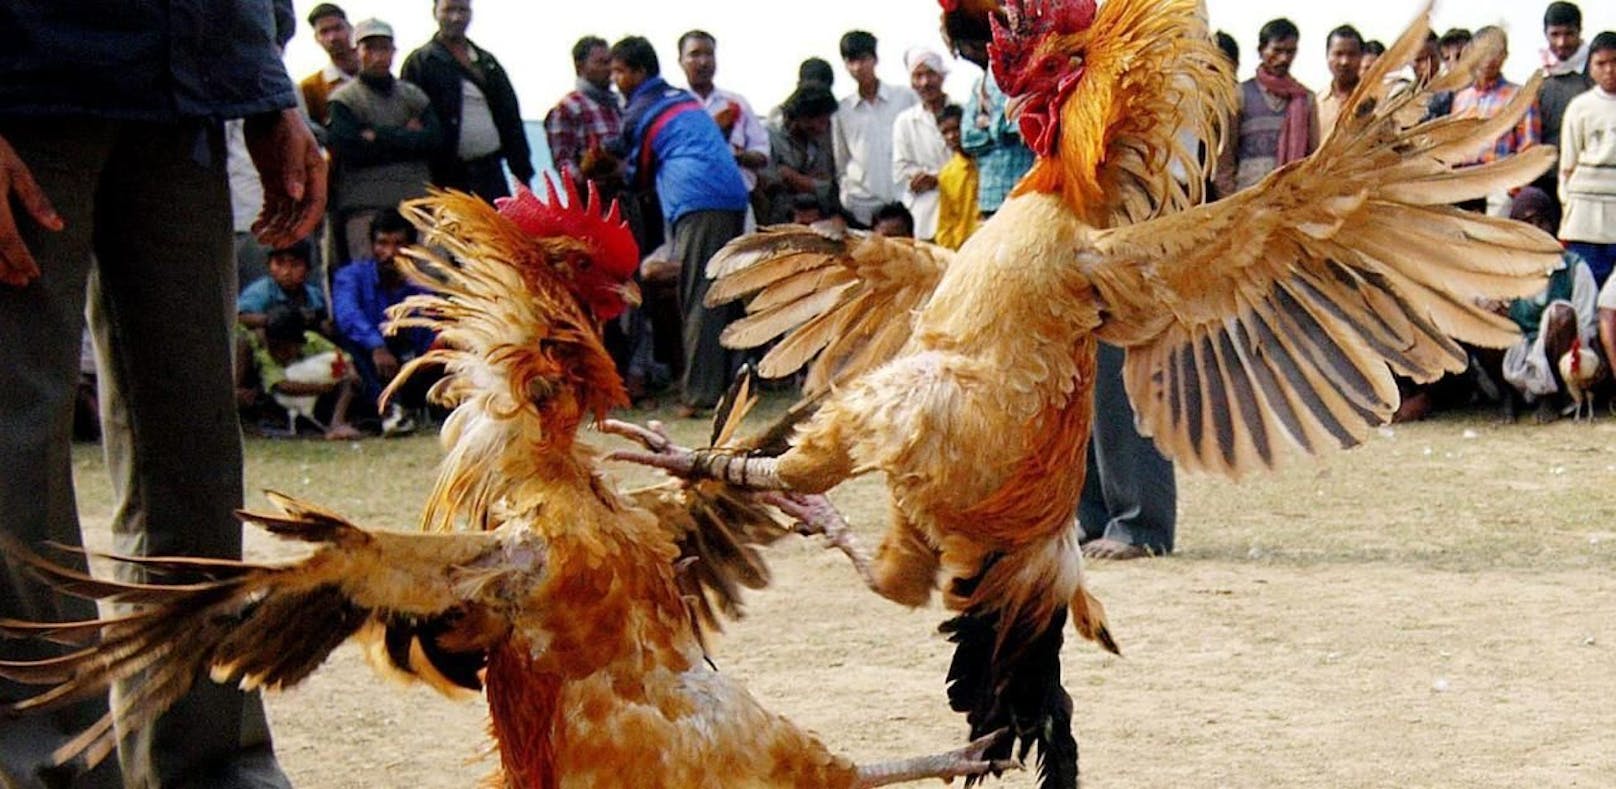 Hahnenkämpfe sind in Indien ein beliebter Volkssport, in Jarkhand jedoch strengstens verboten.